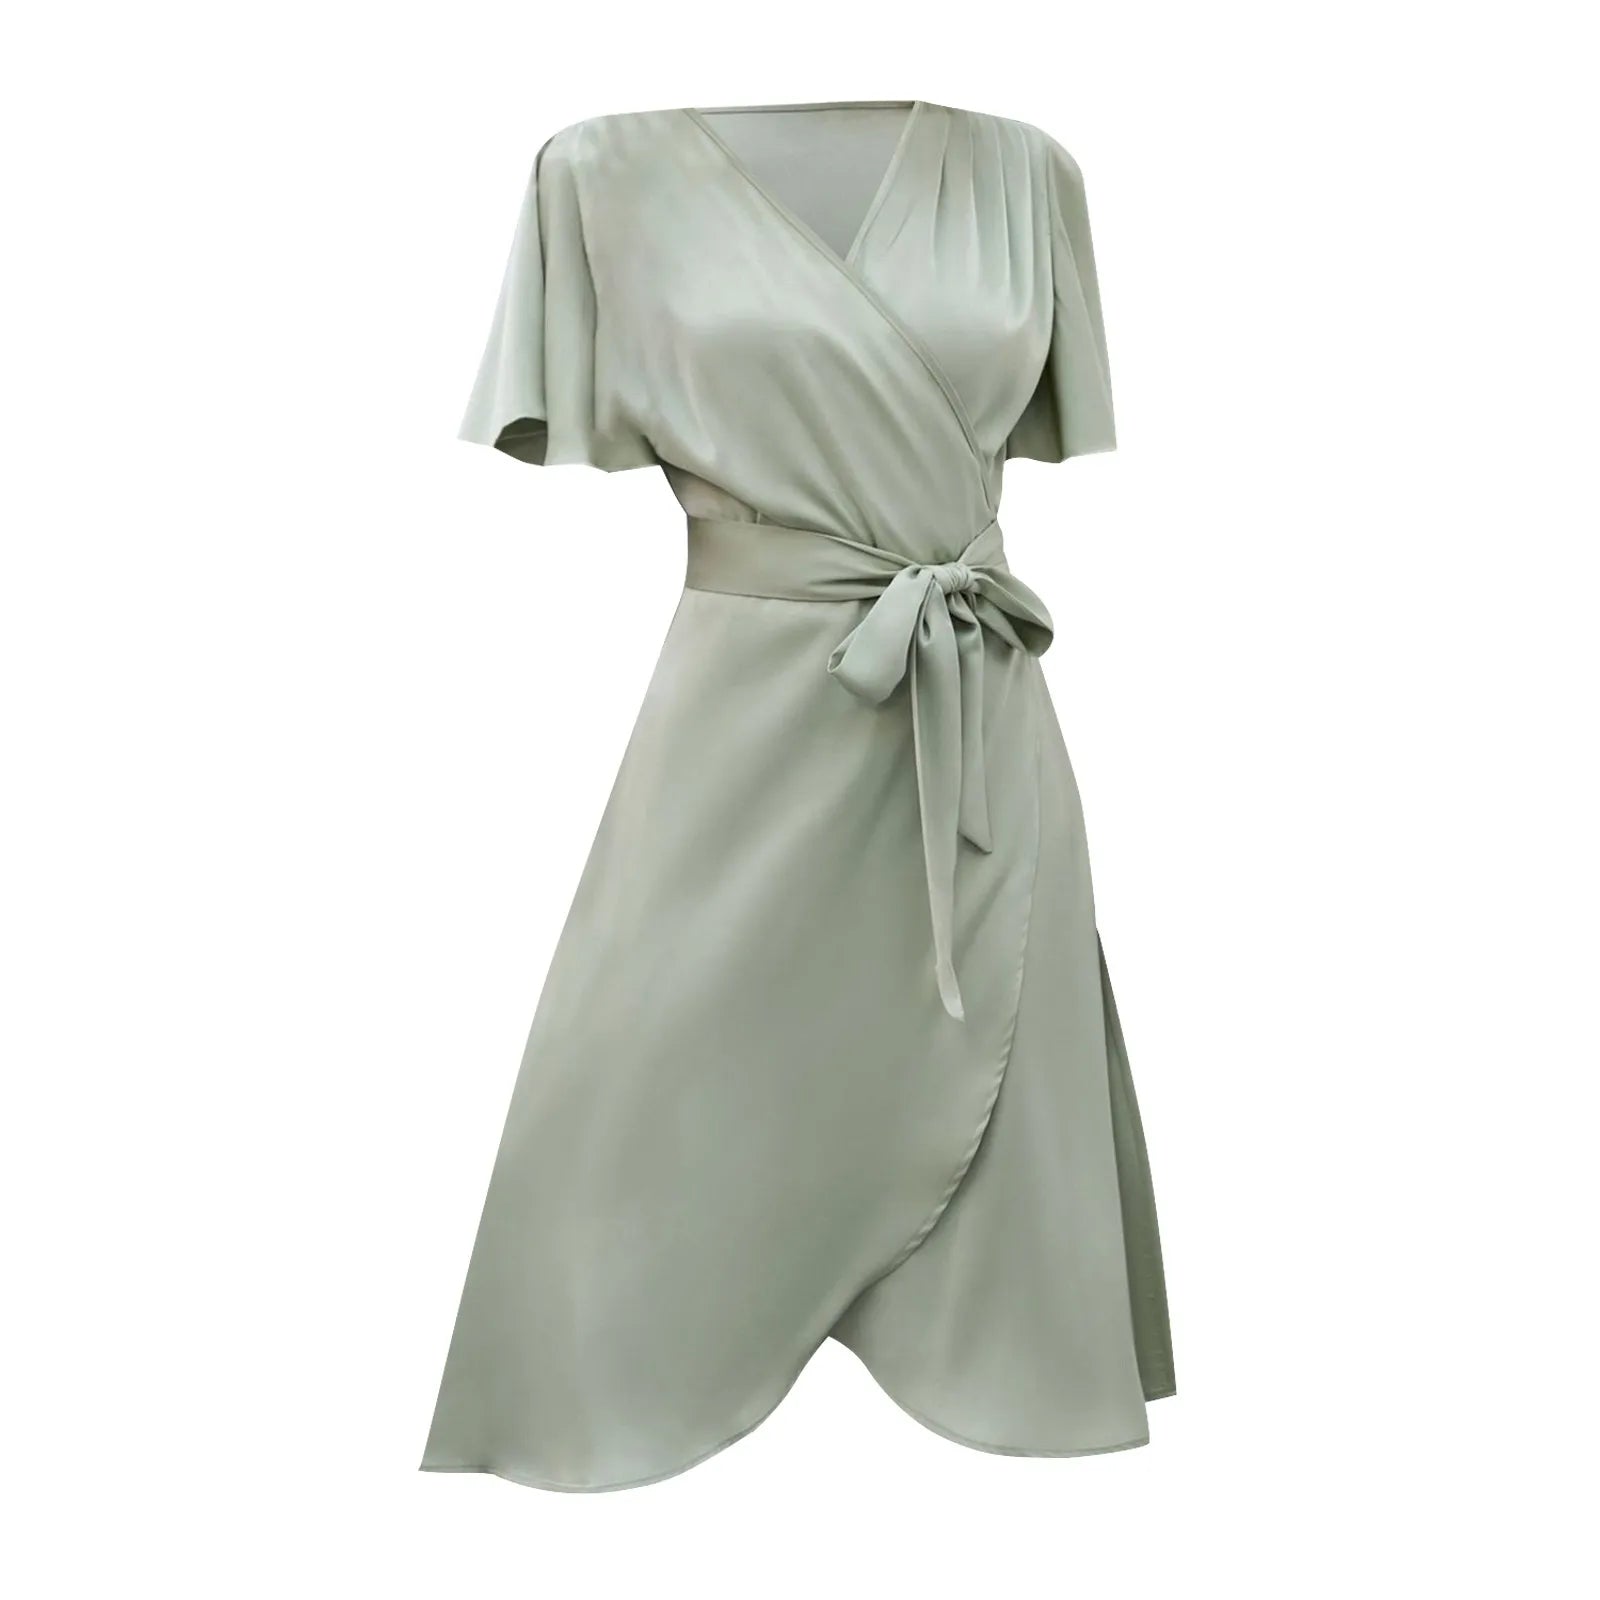 Elegant Bell Sleeve Summer Dresses For Women- ARCHE